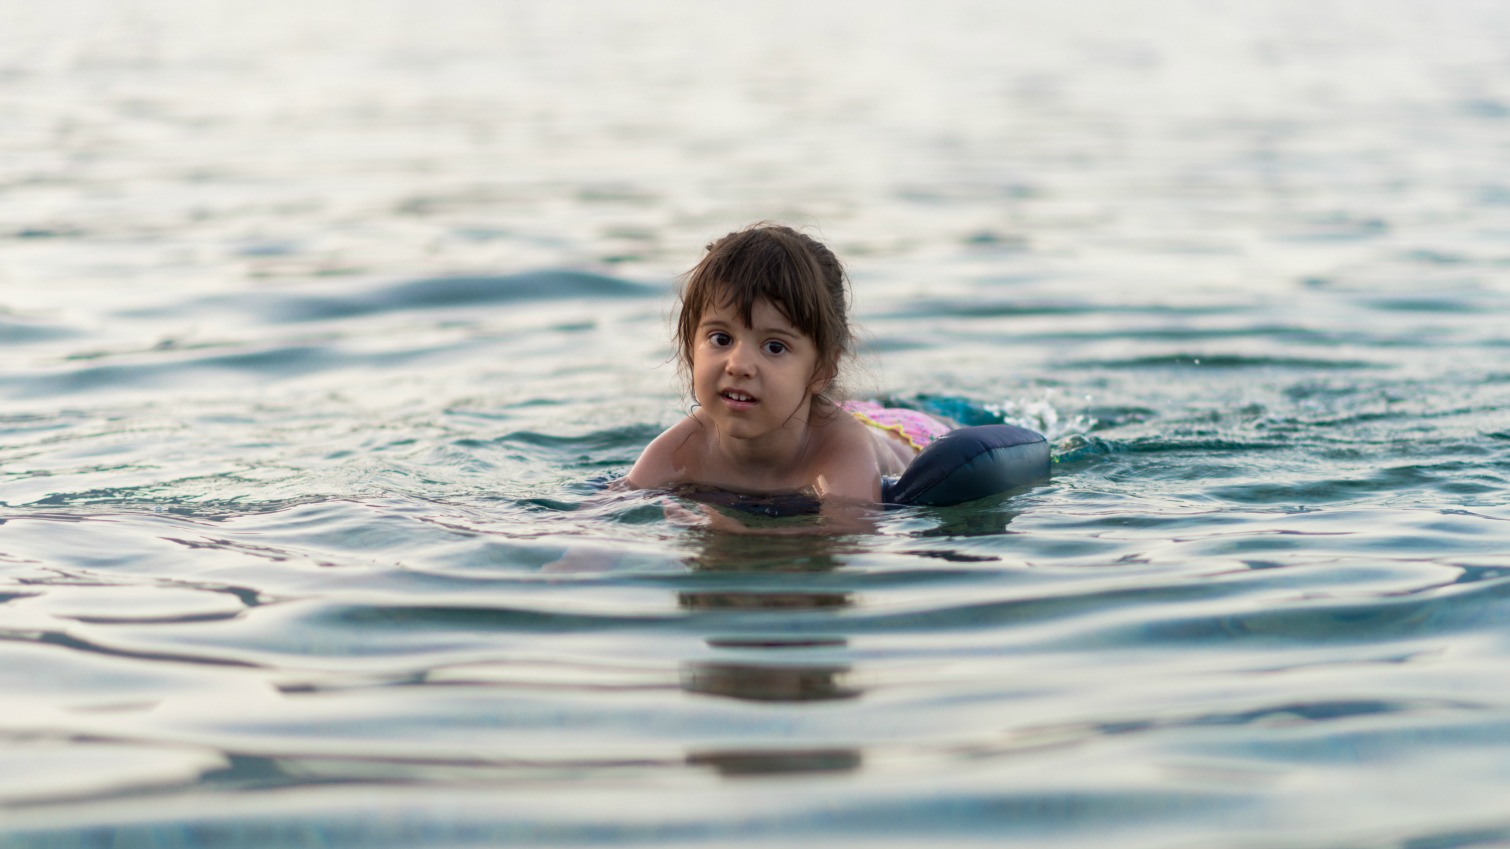 Bahaya Berenang di Air Kotor, Bisa Terkena Infeksi Langka yang Menyerang Otak